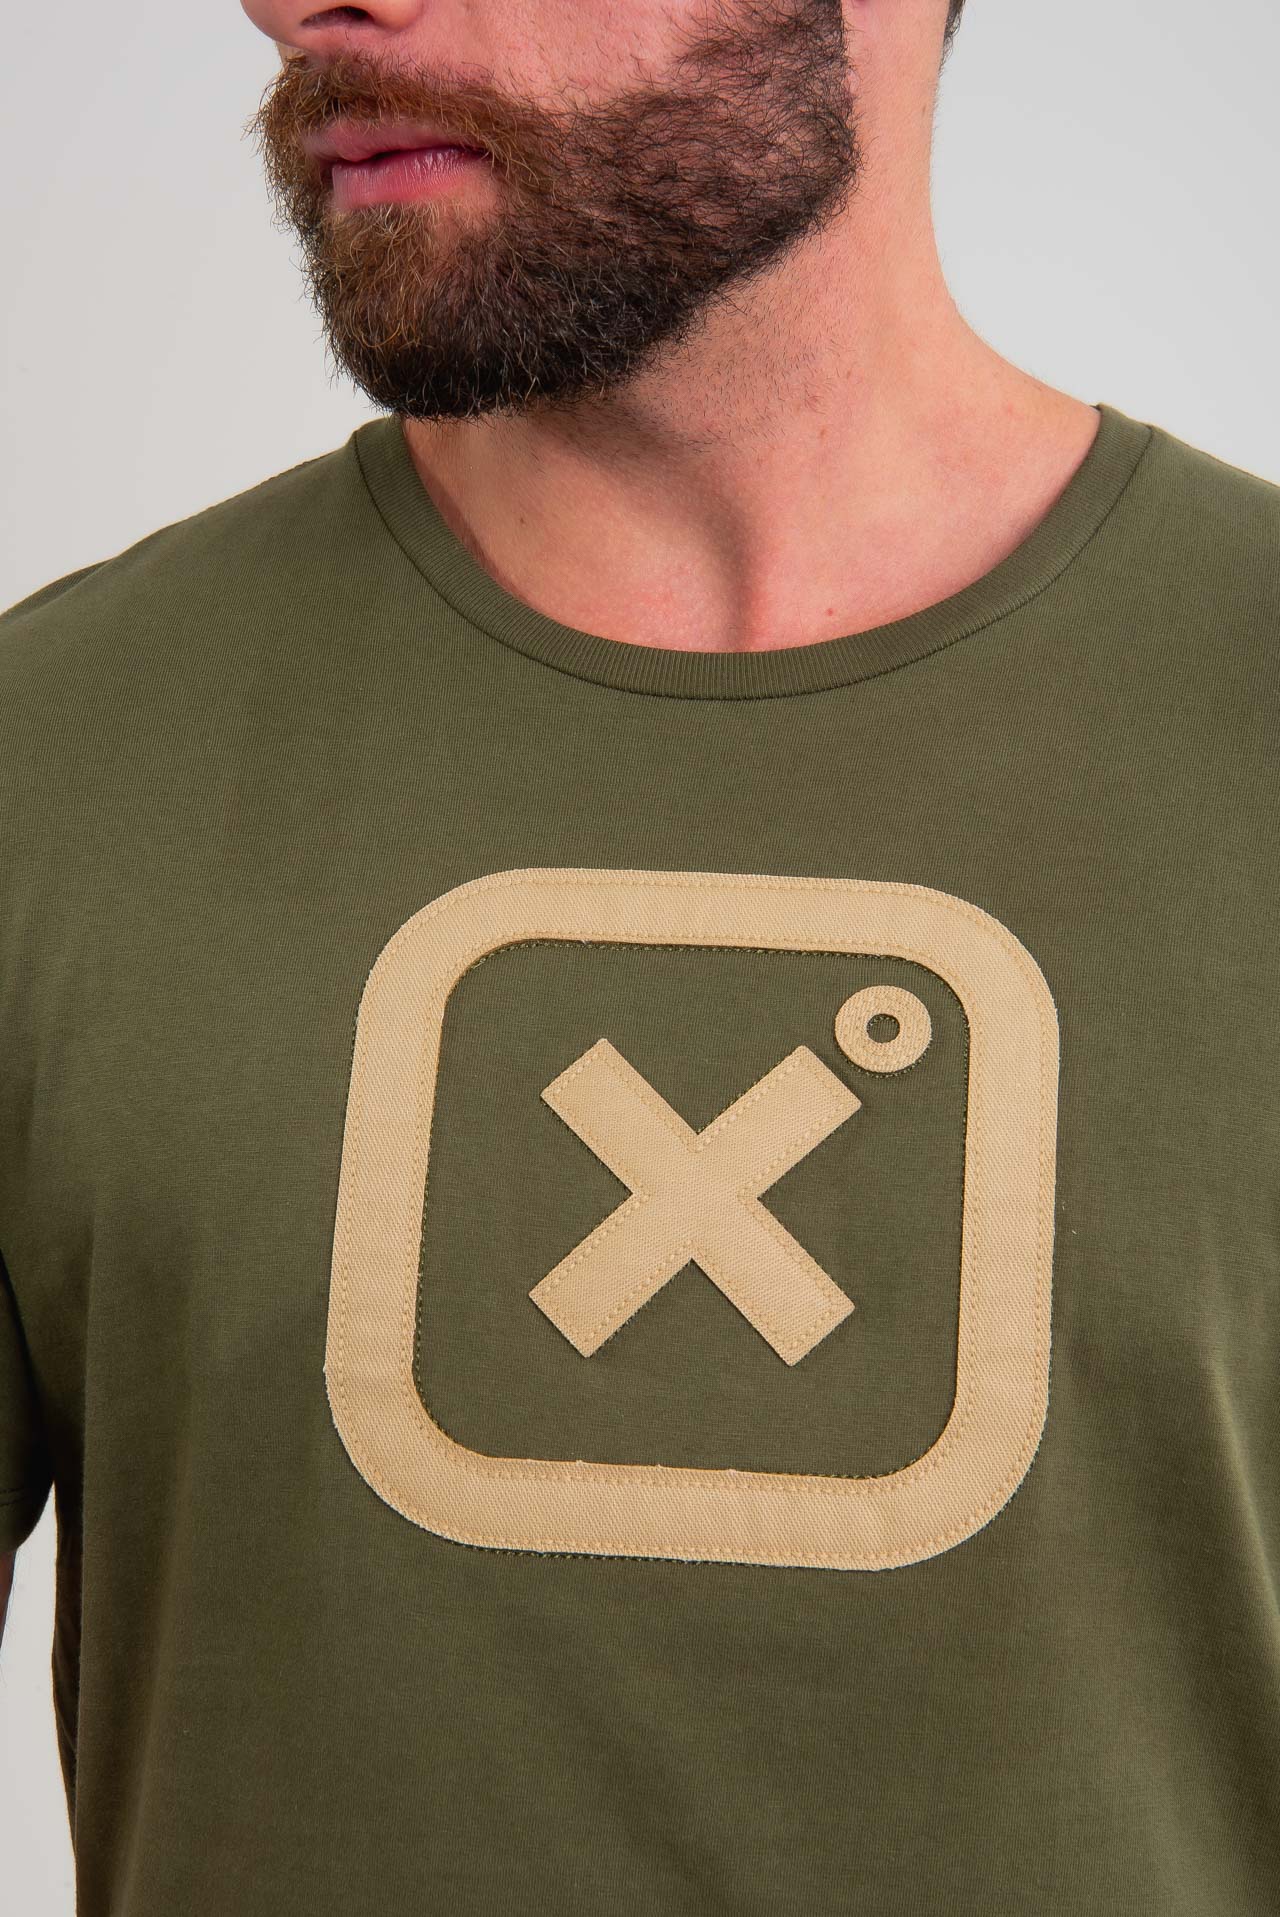 Camiseta TXC Brand 19875 Verde